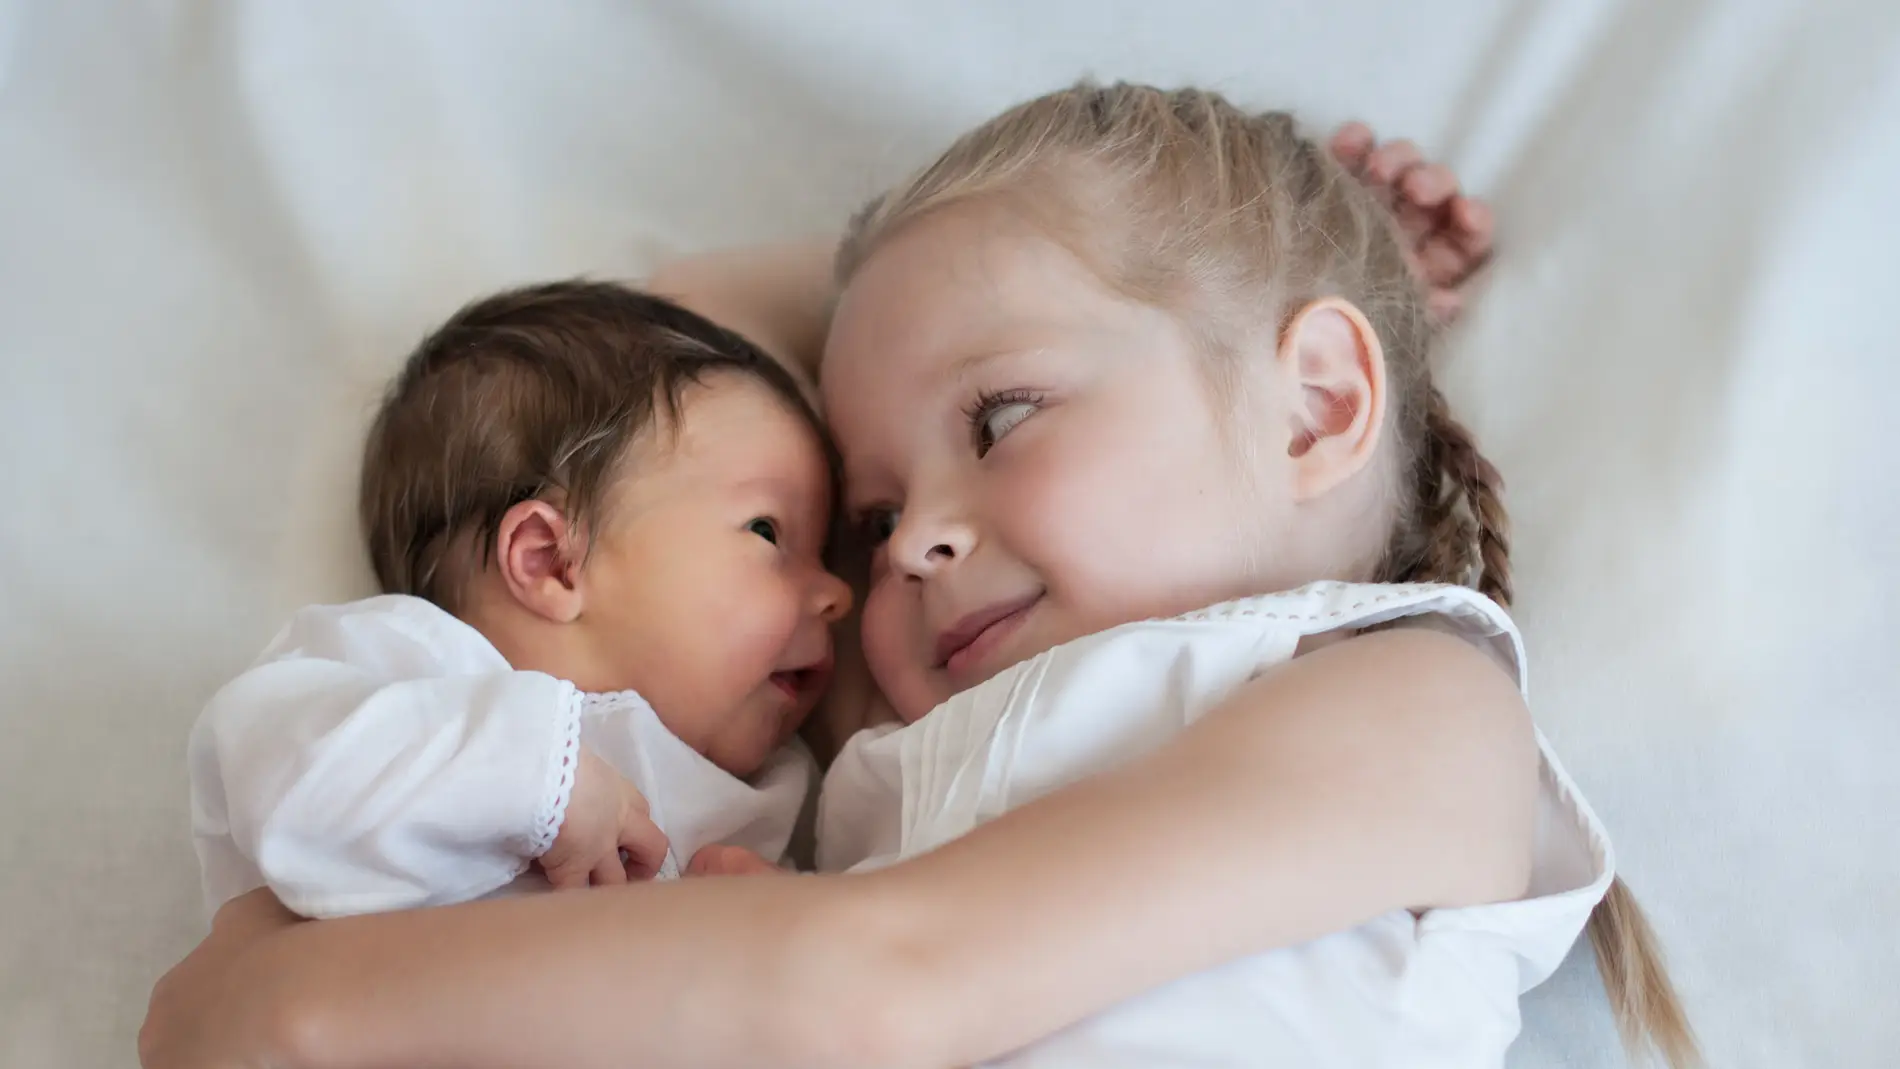 Una niña se niega a separarse de su hermana recién nacida